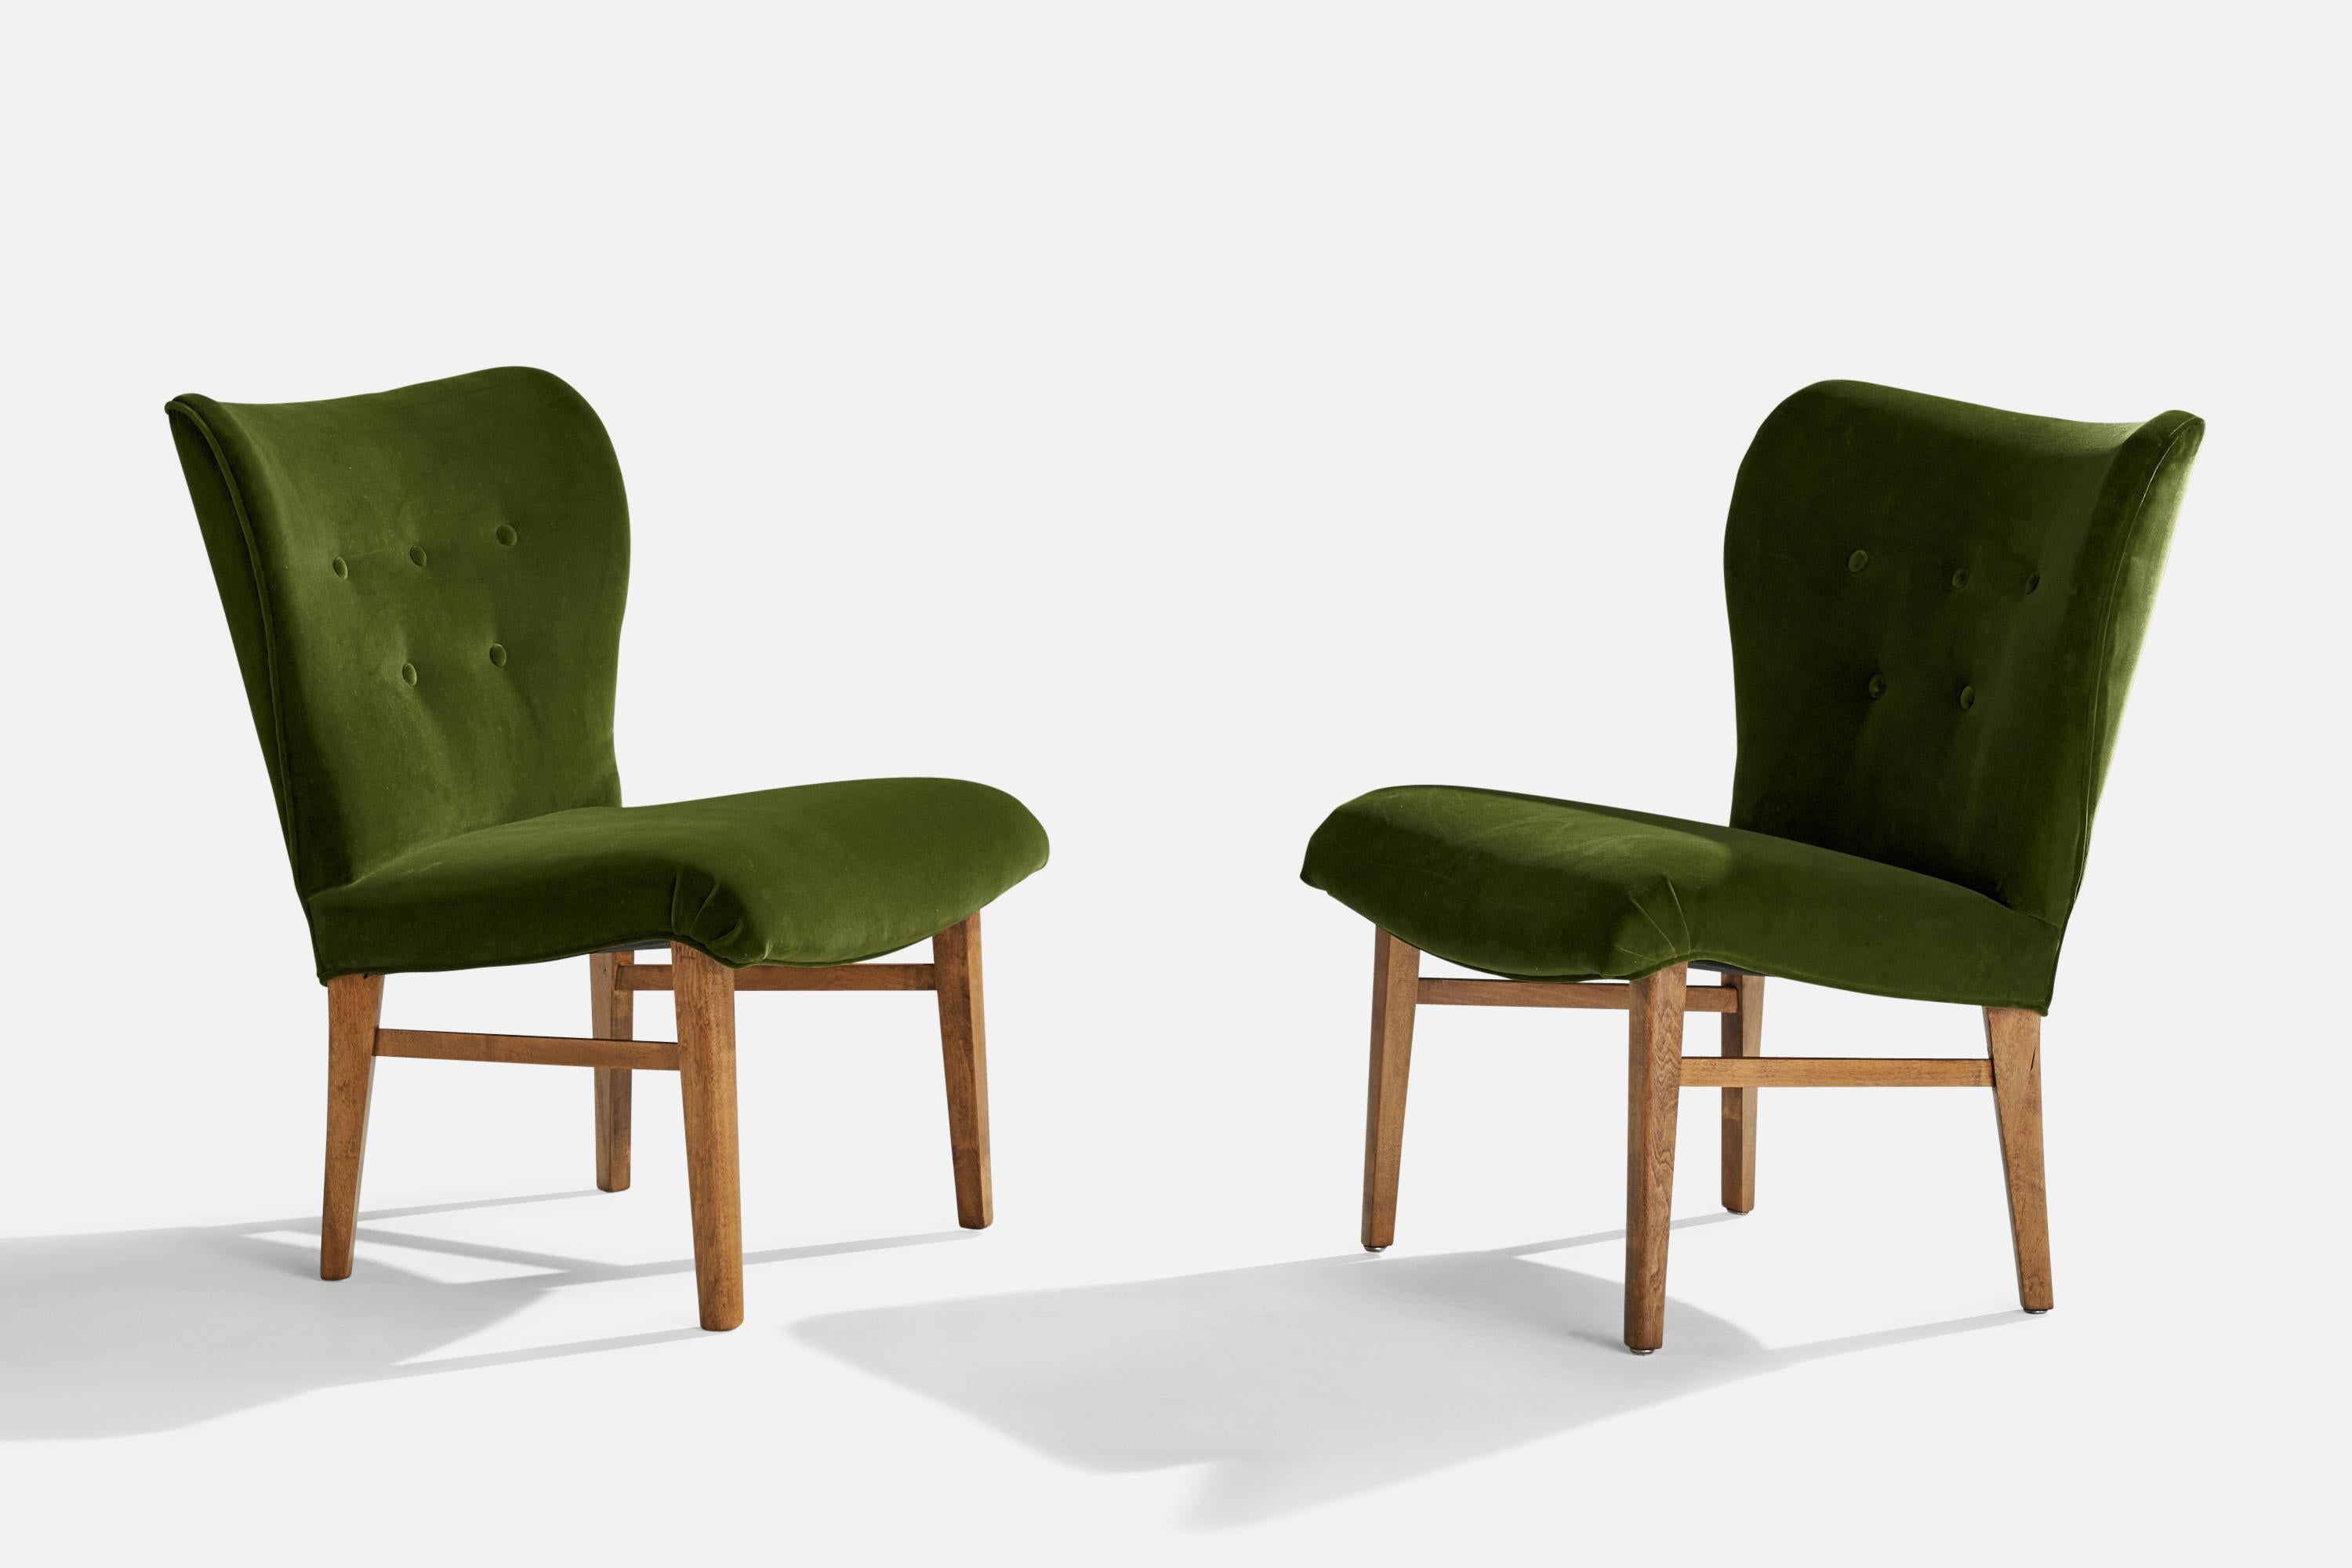 Ein Paar Sessel aus grünem Samtstoff und Buche, zugeschrieben Erik Karlén für die Firma Rumsinteriör, Schweden, um 1950.

Sitzhöhe 17